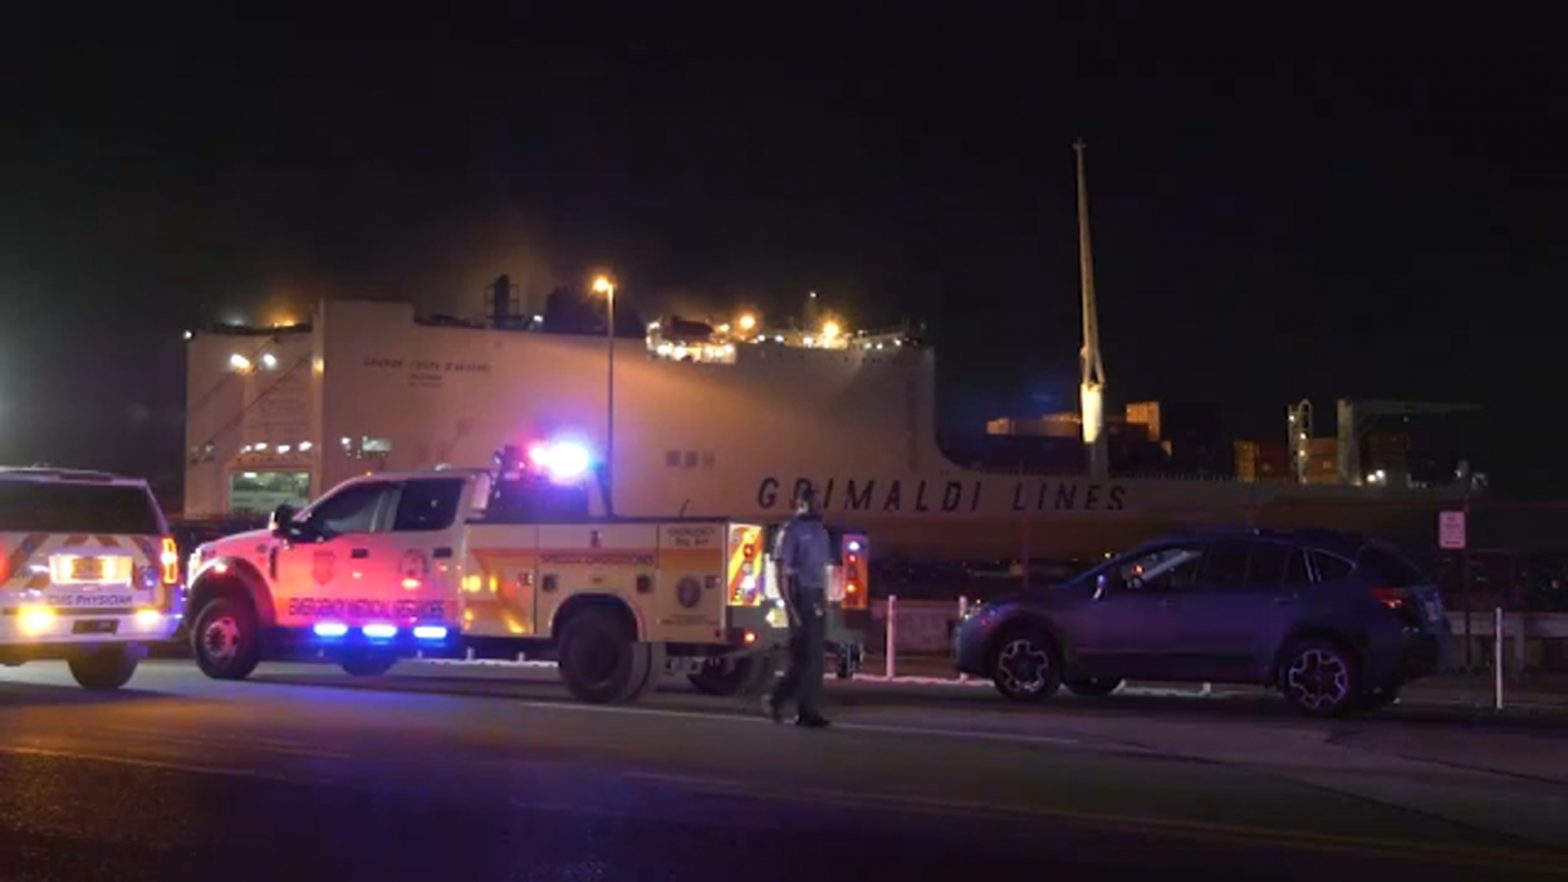 Port Newark ship fire: 2 firefighters dead, many officers injured in blaze